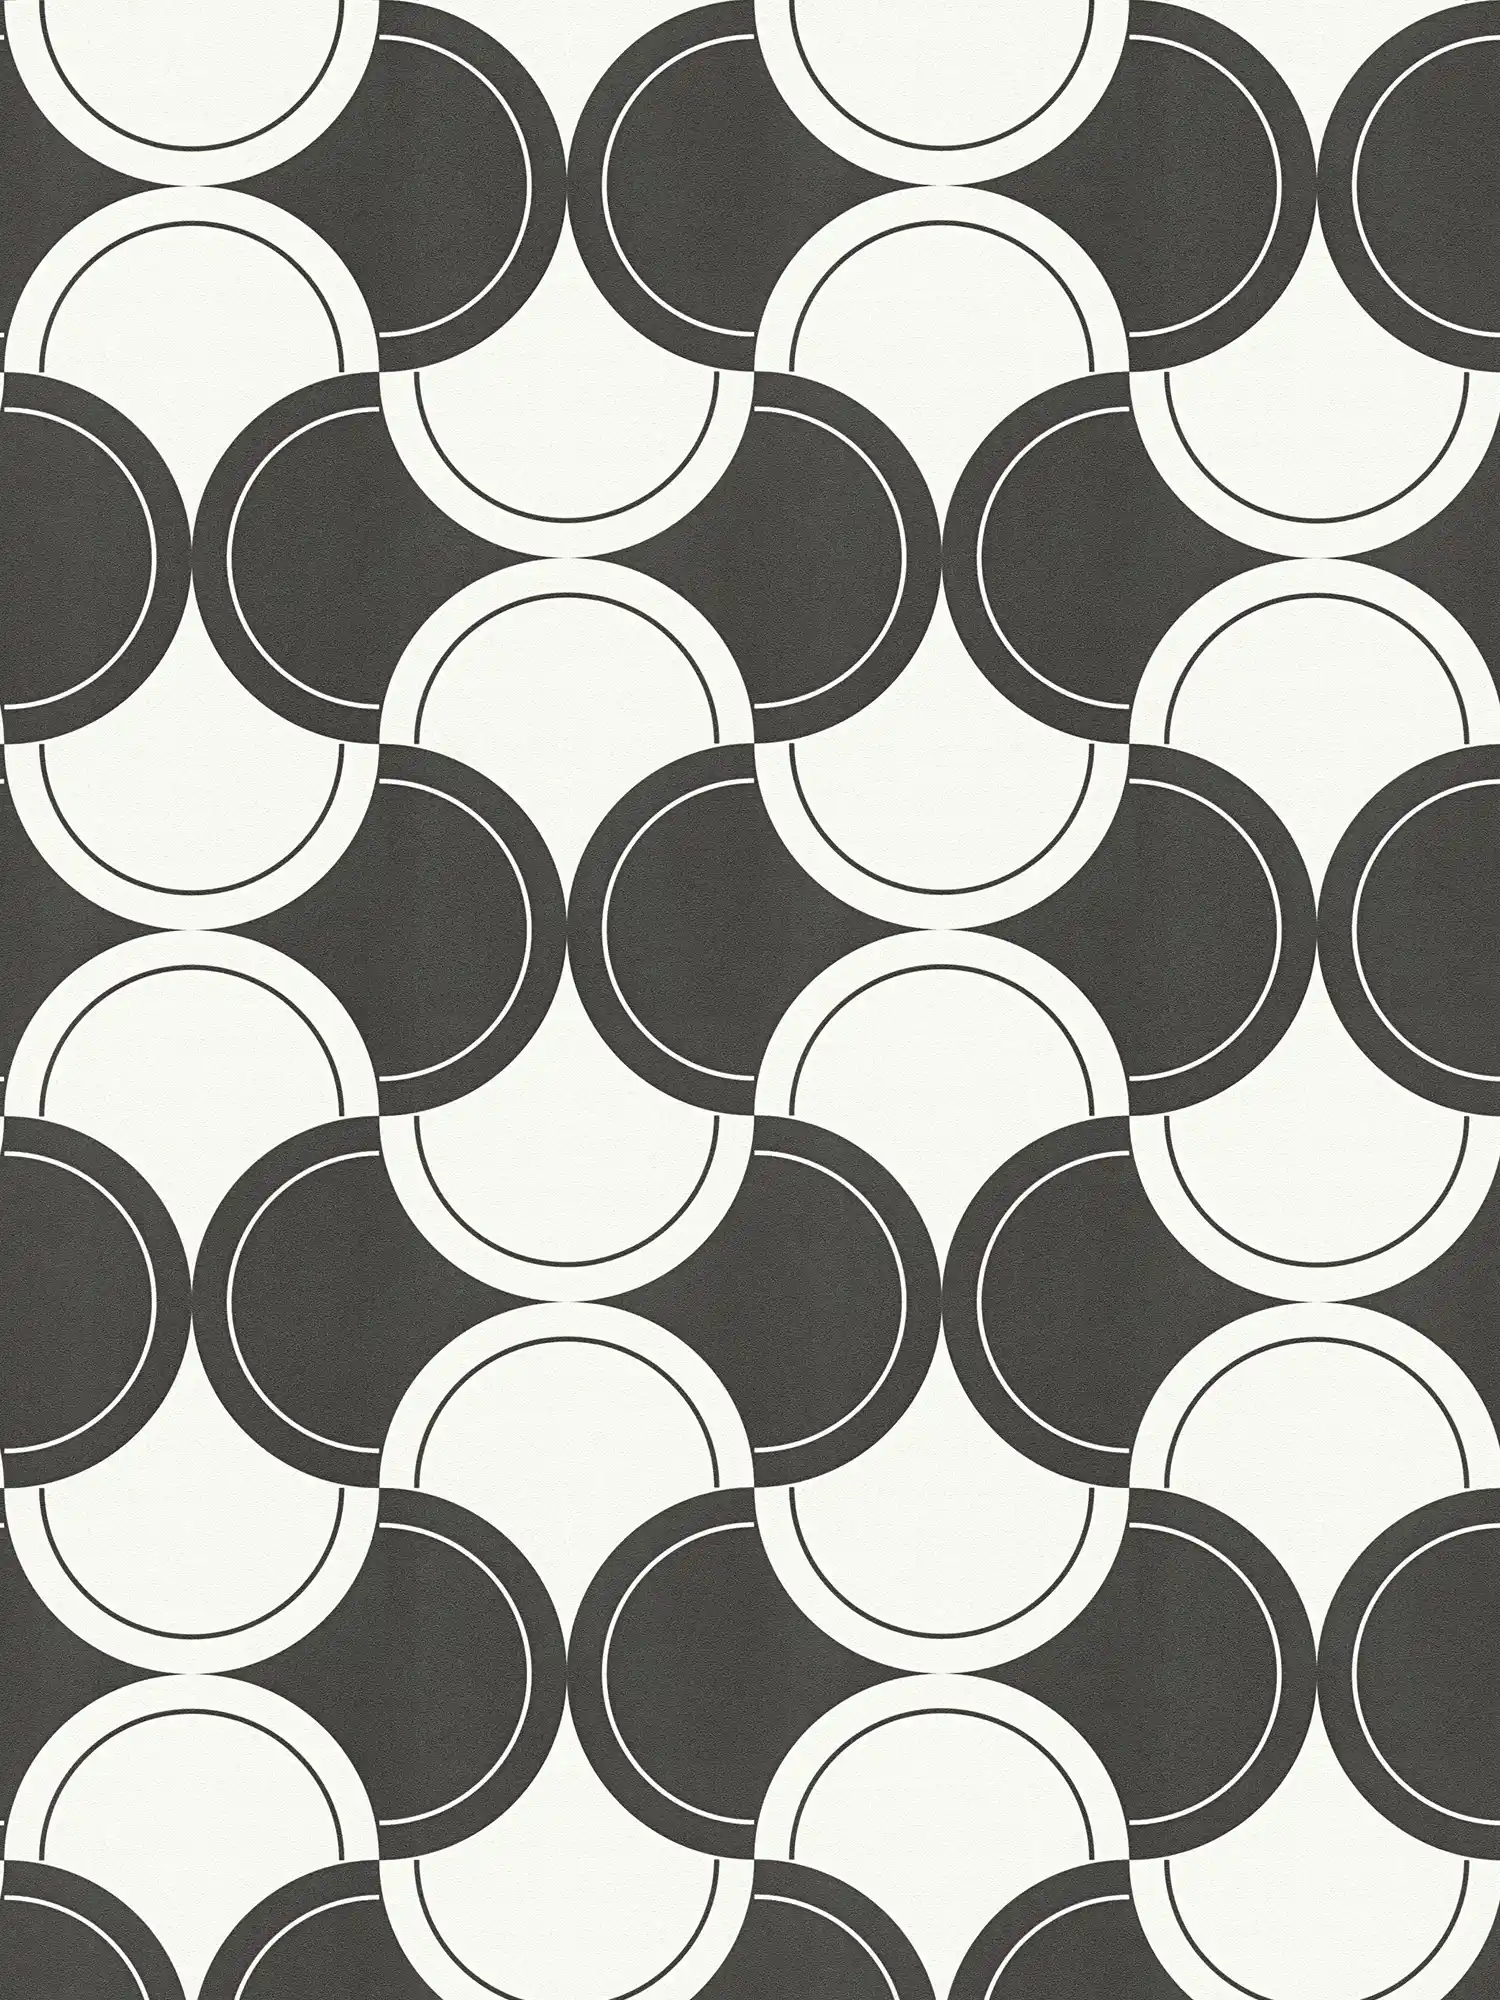 Vliesbehang retro patroon met cirkels jaren 70 stijl - zwart en wit
